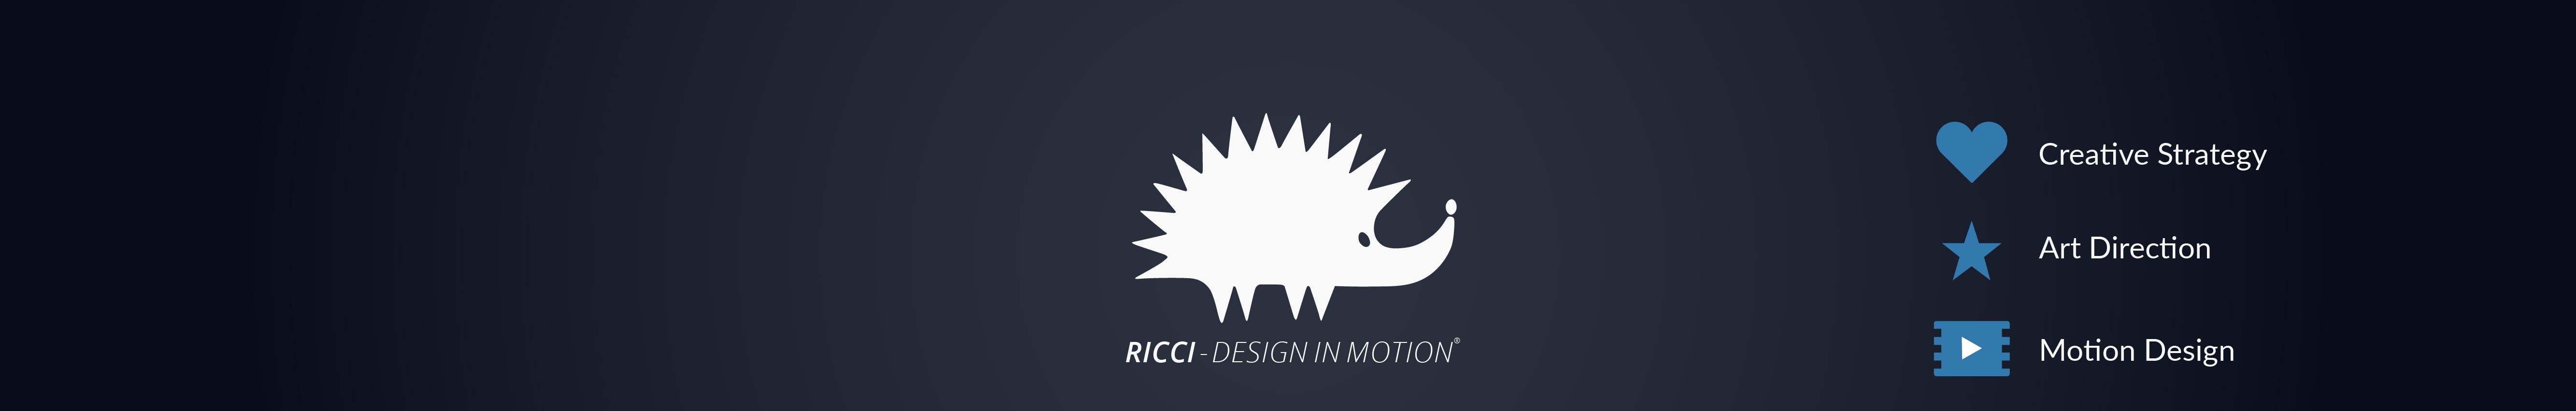 Ricci - Design in Motion®'s profile banner